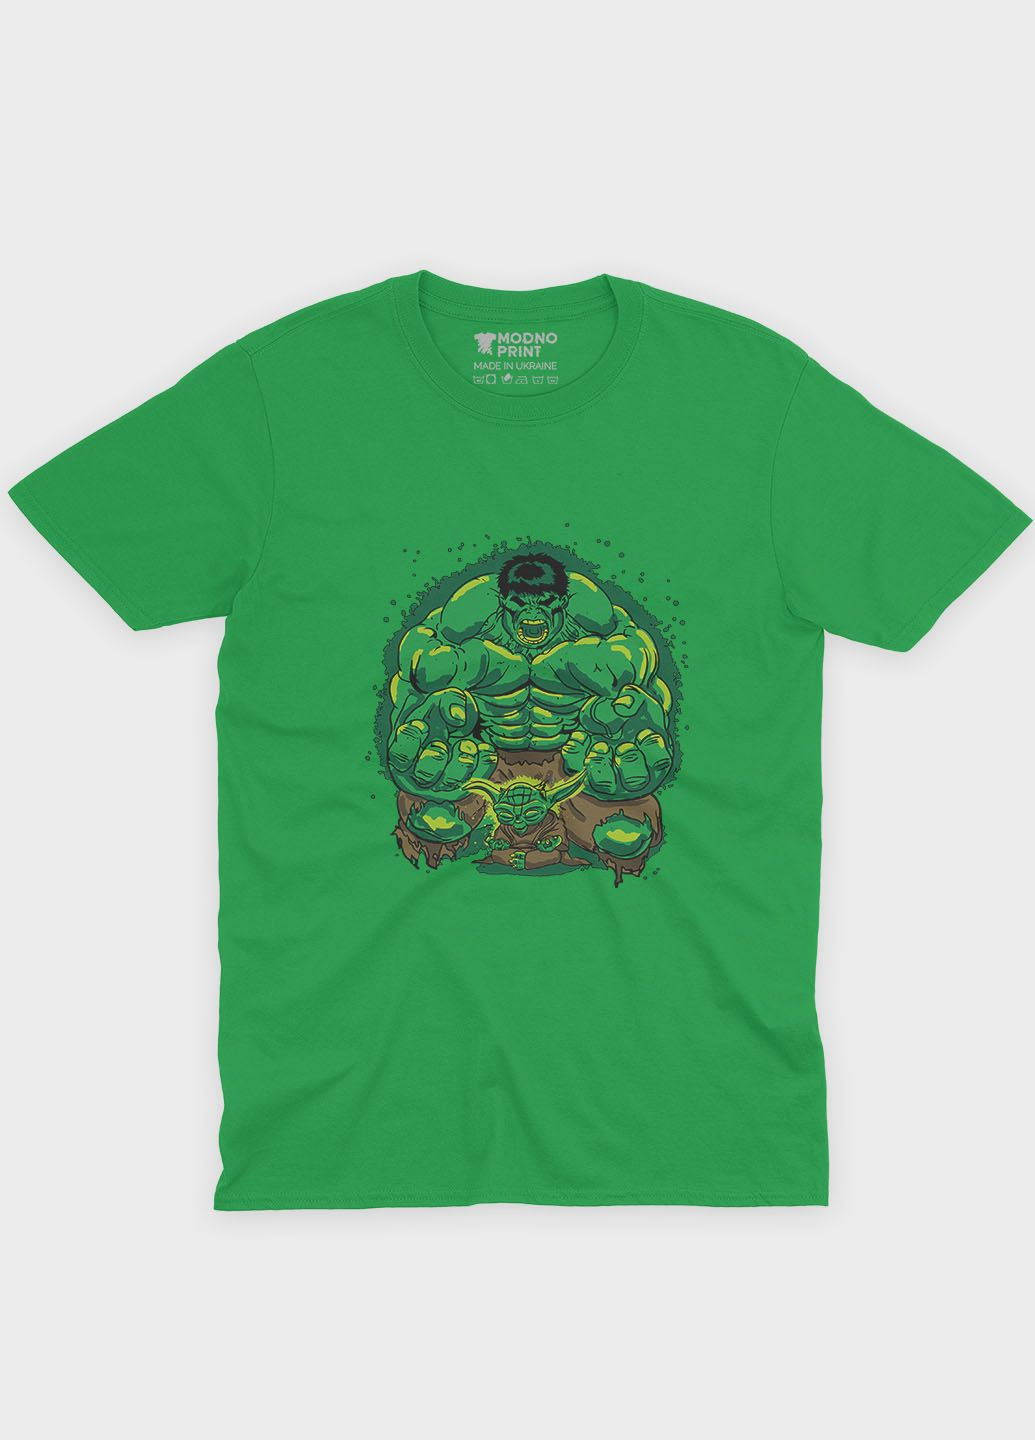 Зеленая демисезонная футболка для мальчика с принтом супергероя - халк (ts001-1-keg-006-018-003-b) Modno